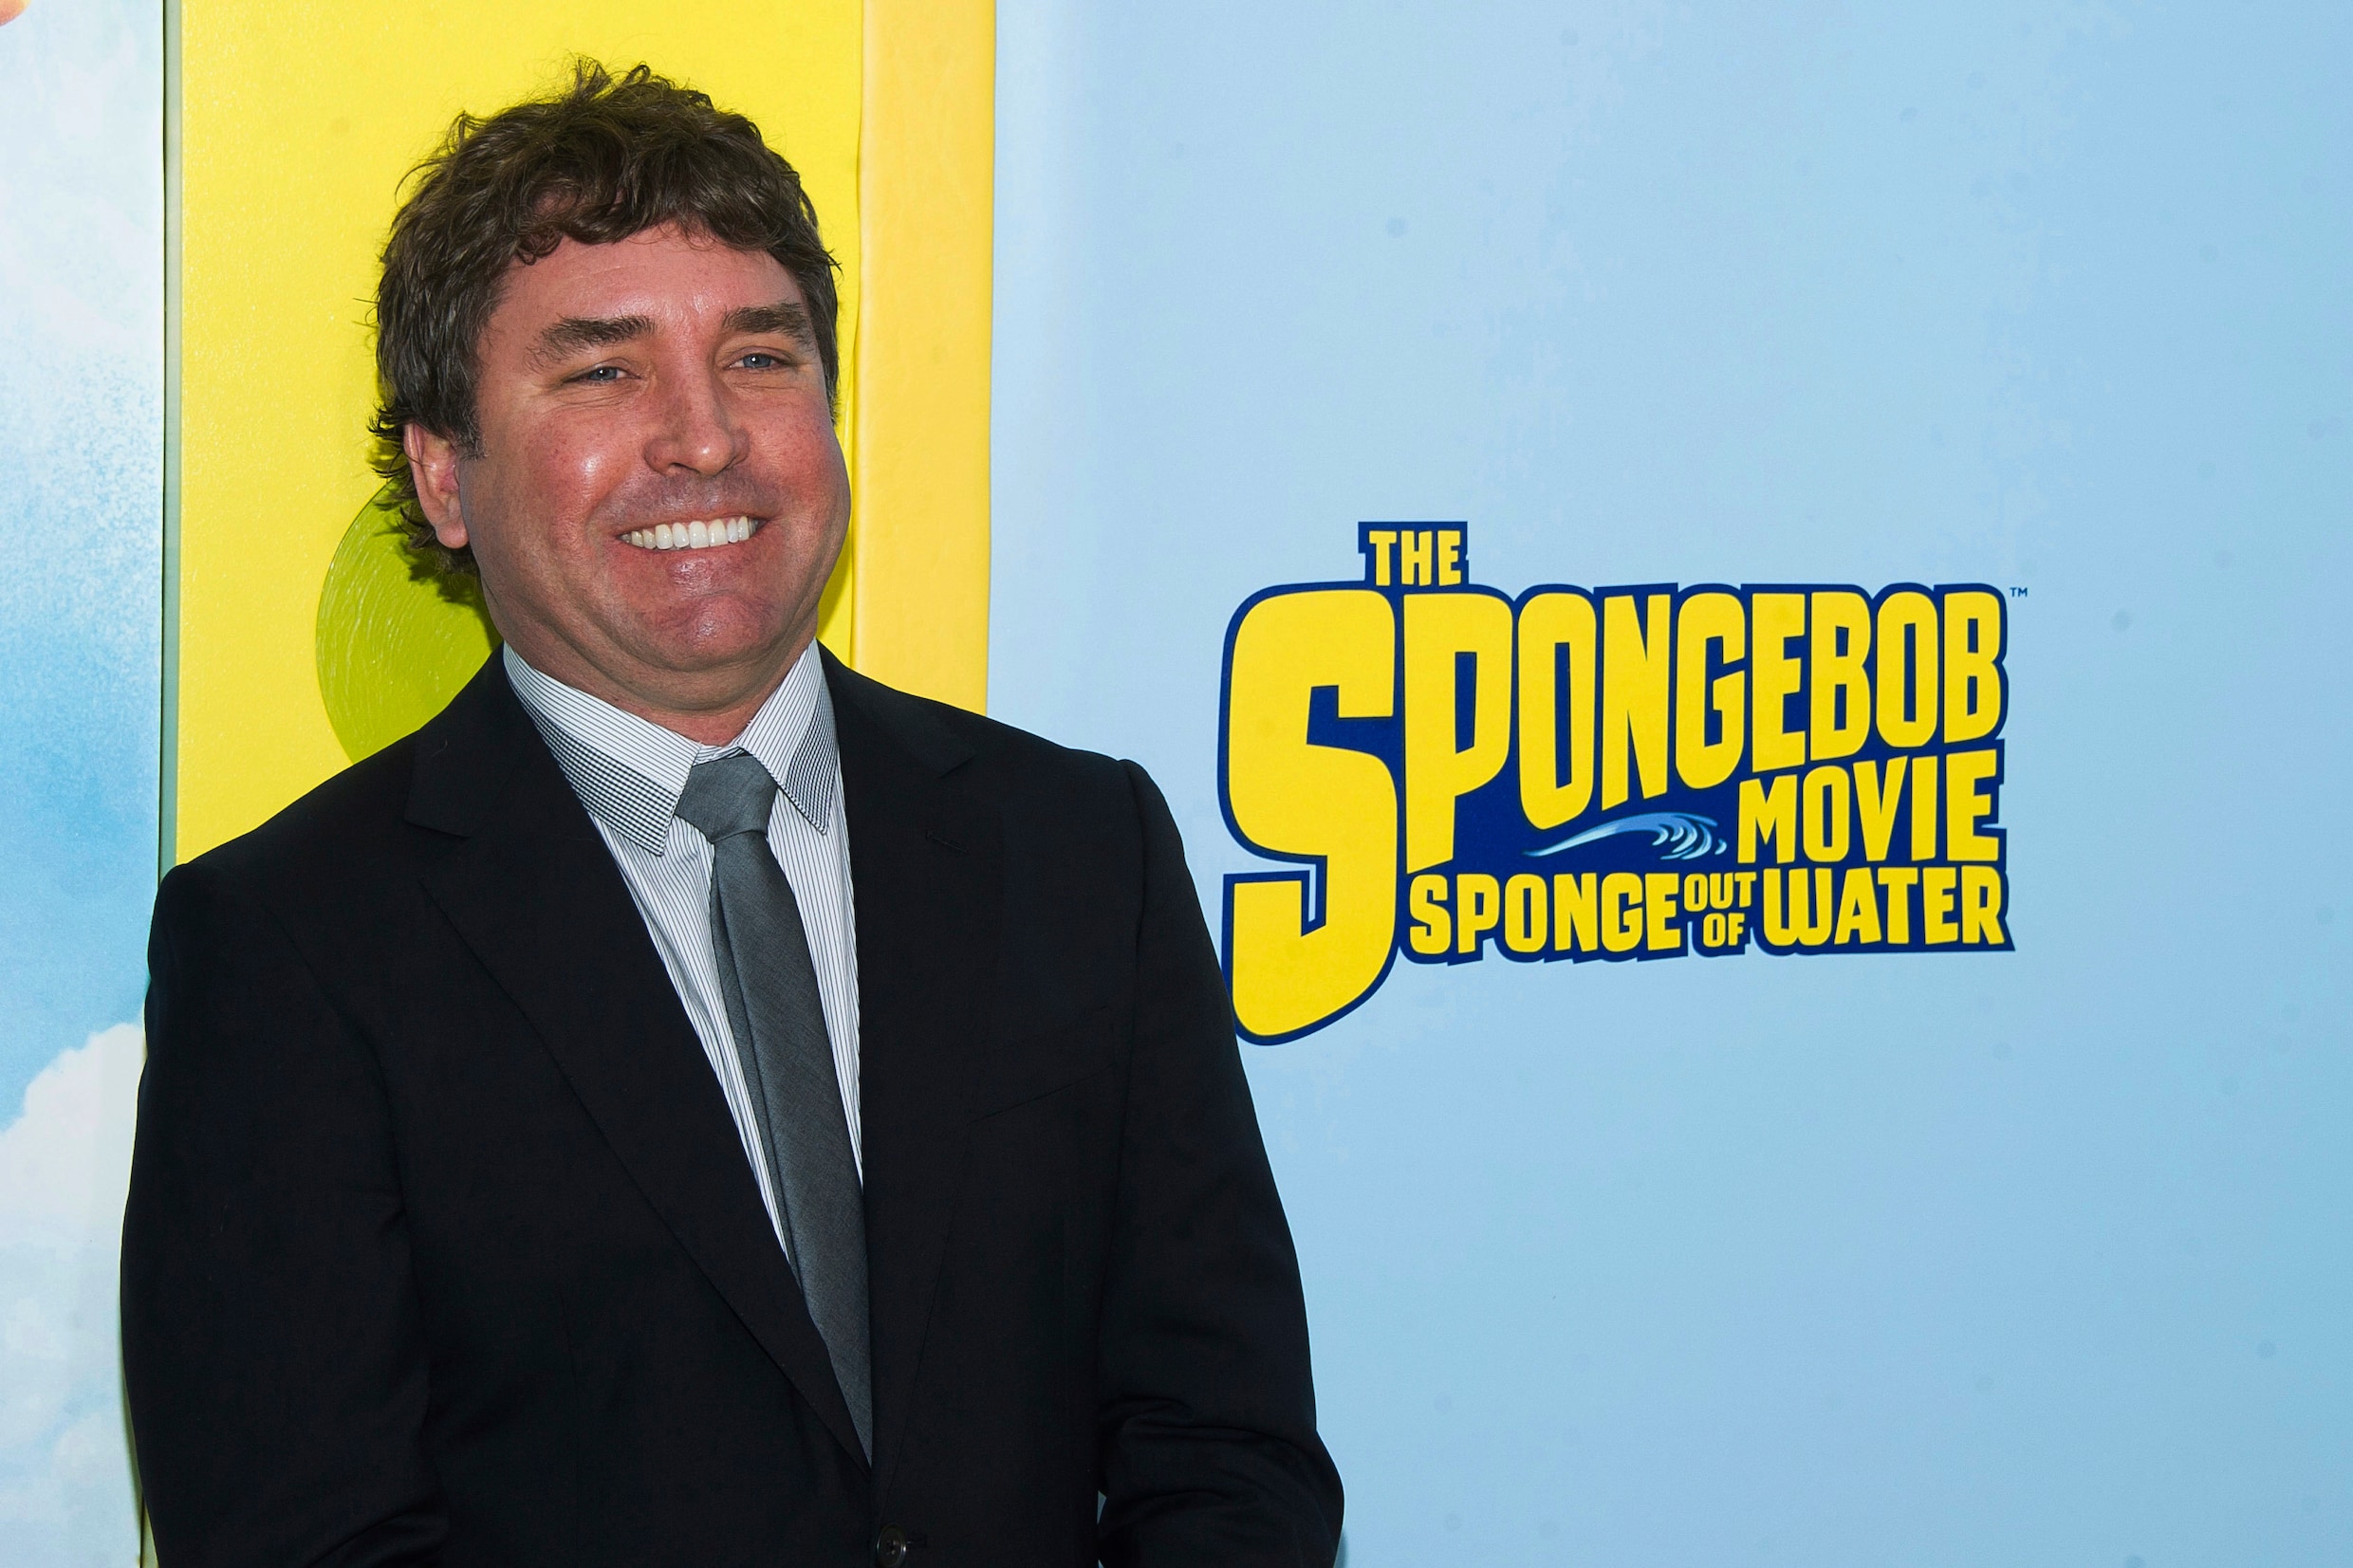 SpongeBob-bedenker Stephen Hillenburg (1961-2018): oceanoloog met liefde voor animatie